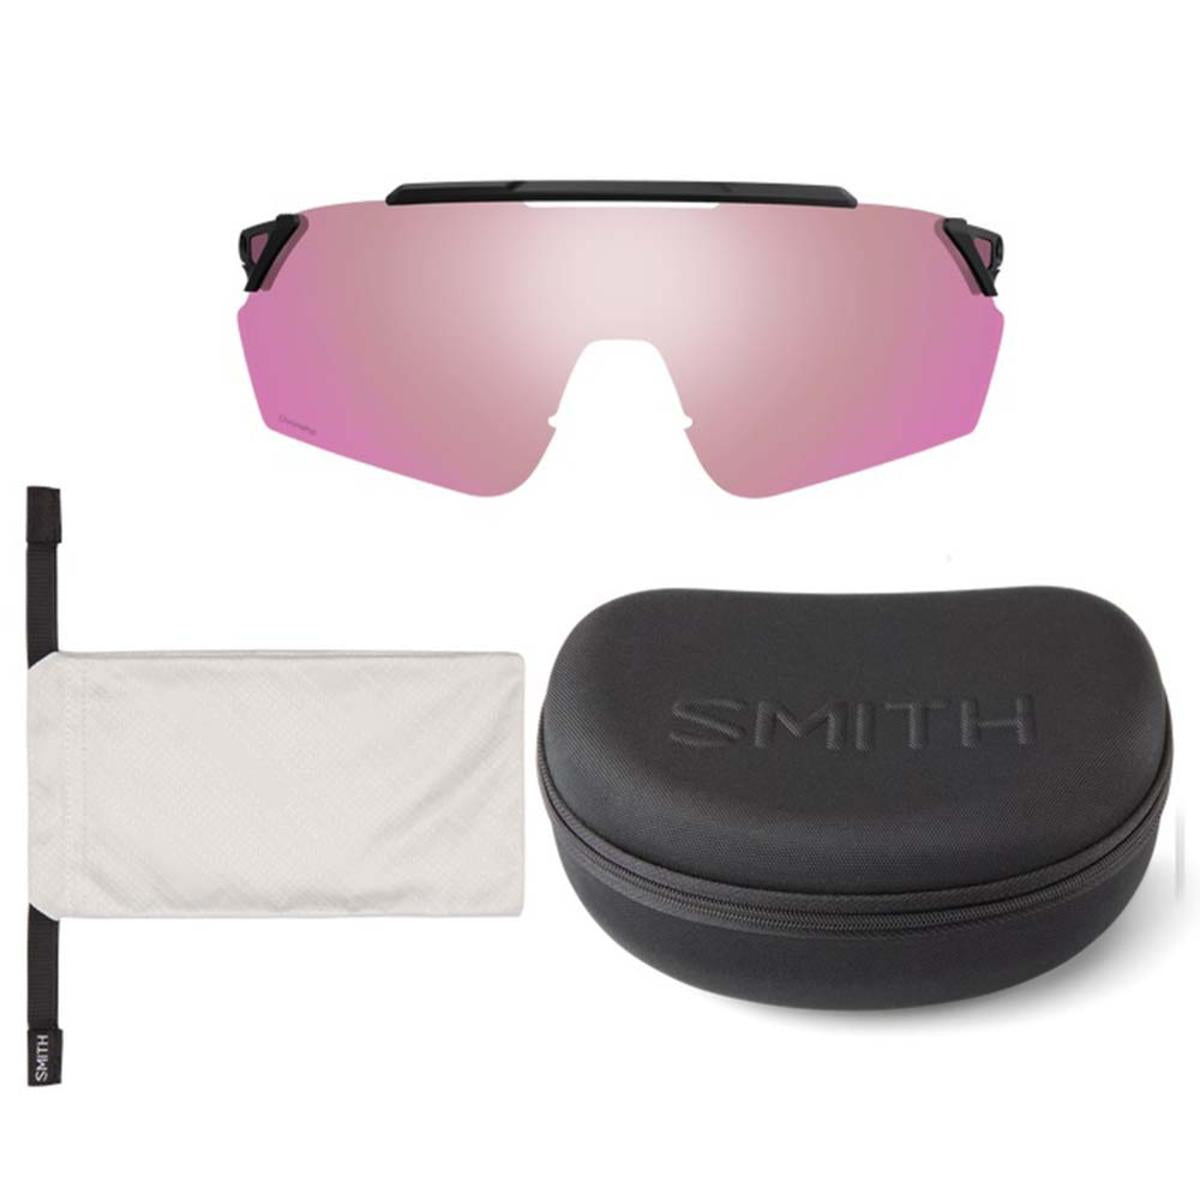 Smith Optics Ruckus Sunglasses ChromaPop Violet Mirror - Matte White Frame